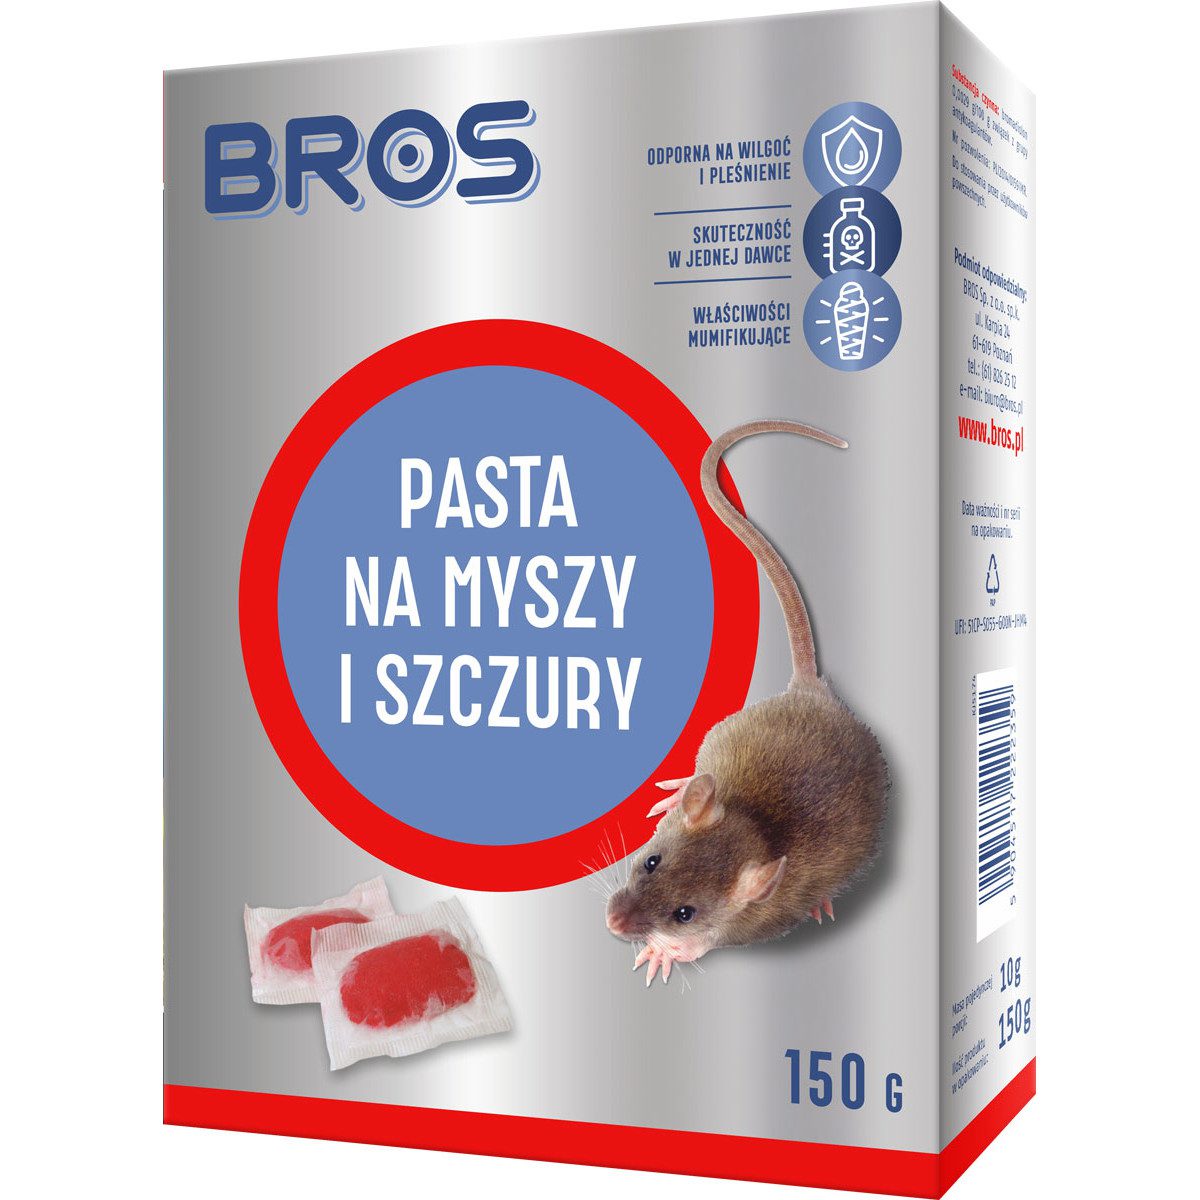 Bros Pasta na myszy i szczury